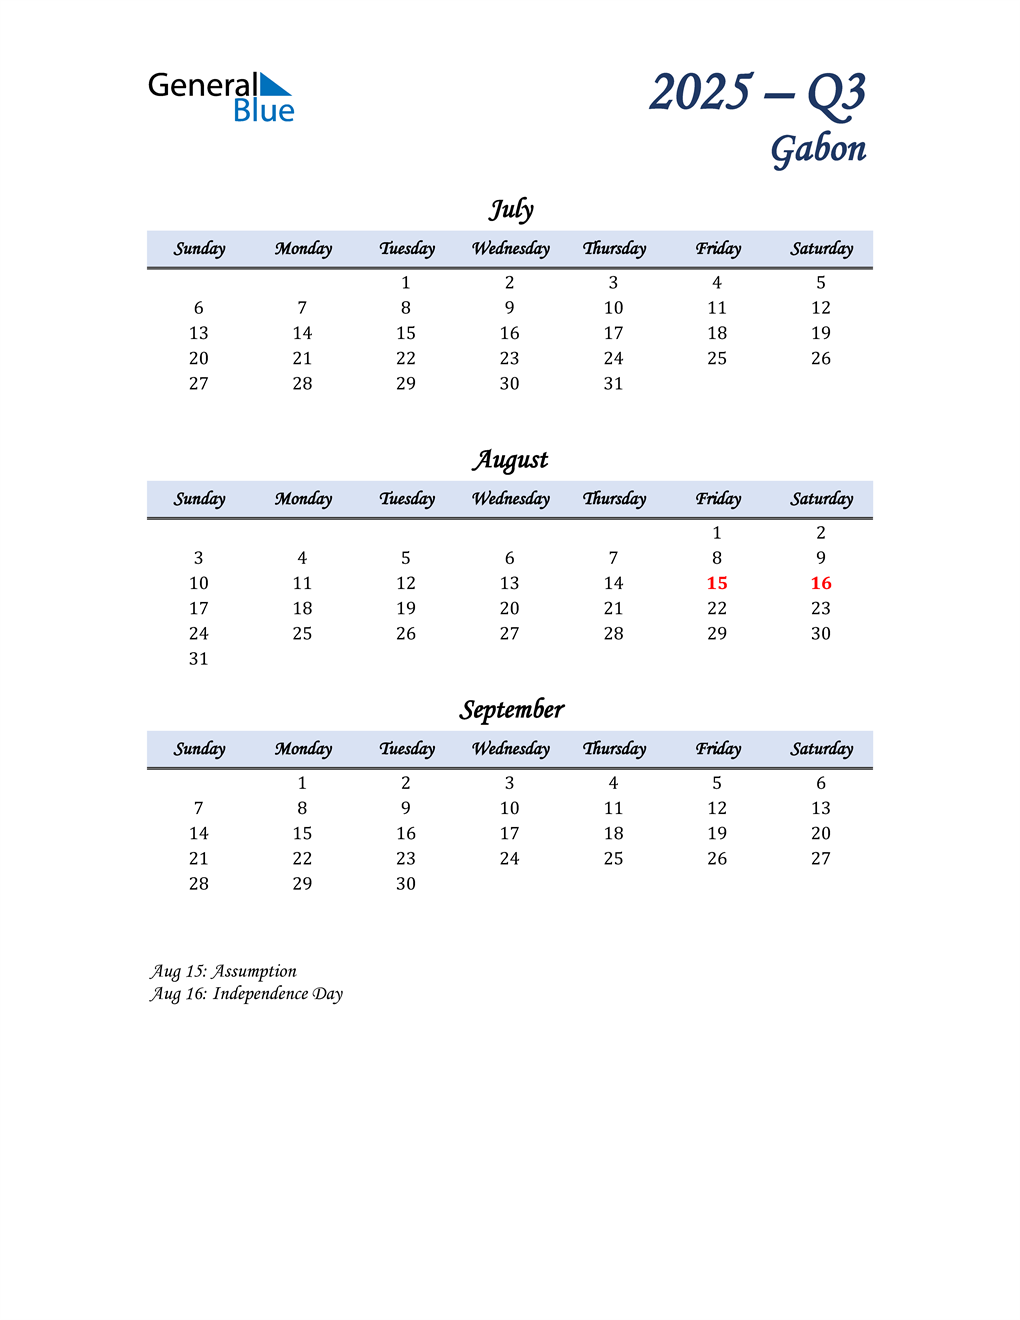  July, August, and September Calendar for Gabon